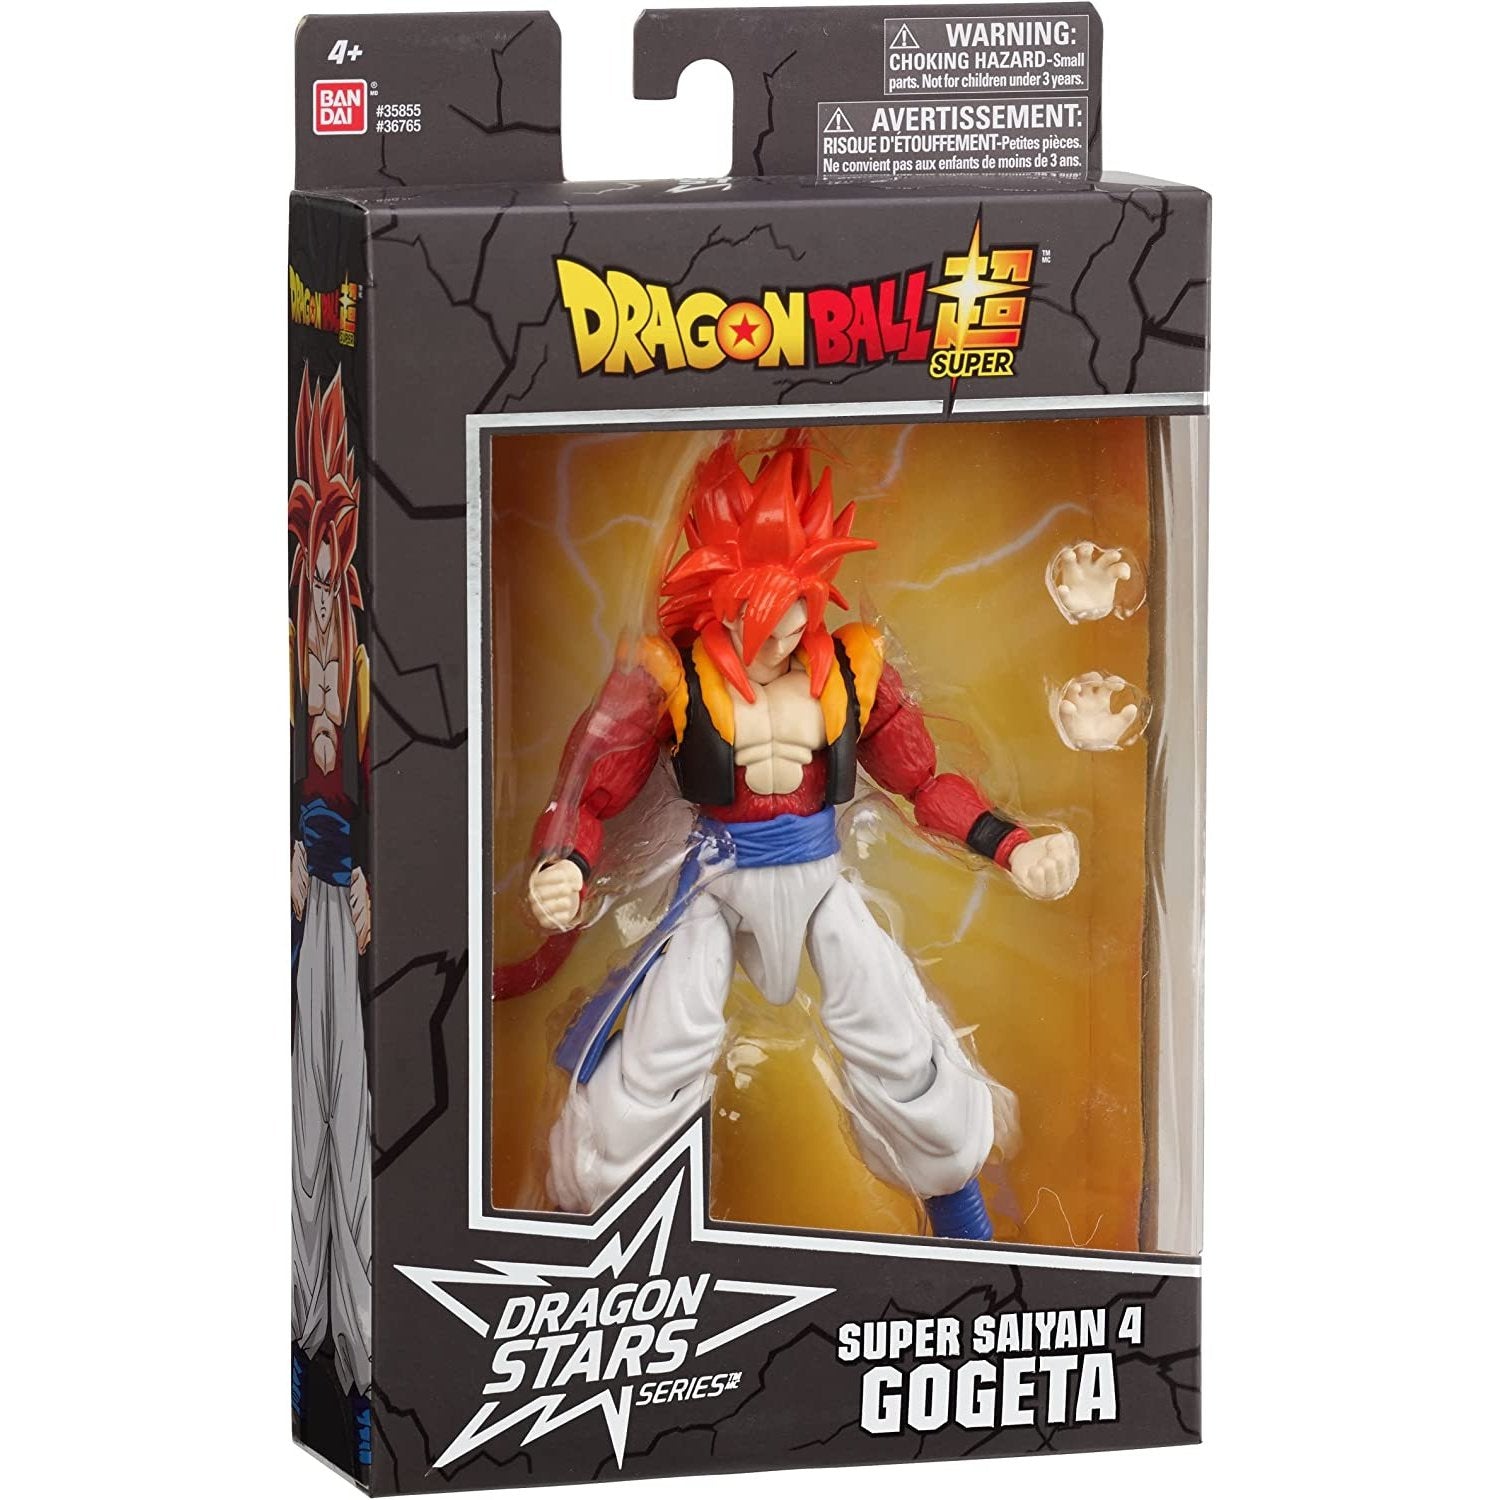 Dragon Ball Stars Super Saiyan 4 Gogeta Action Figure